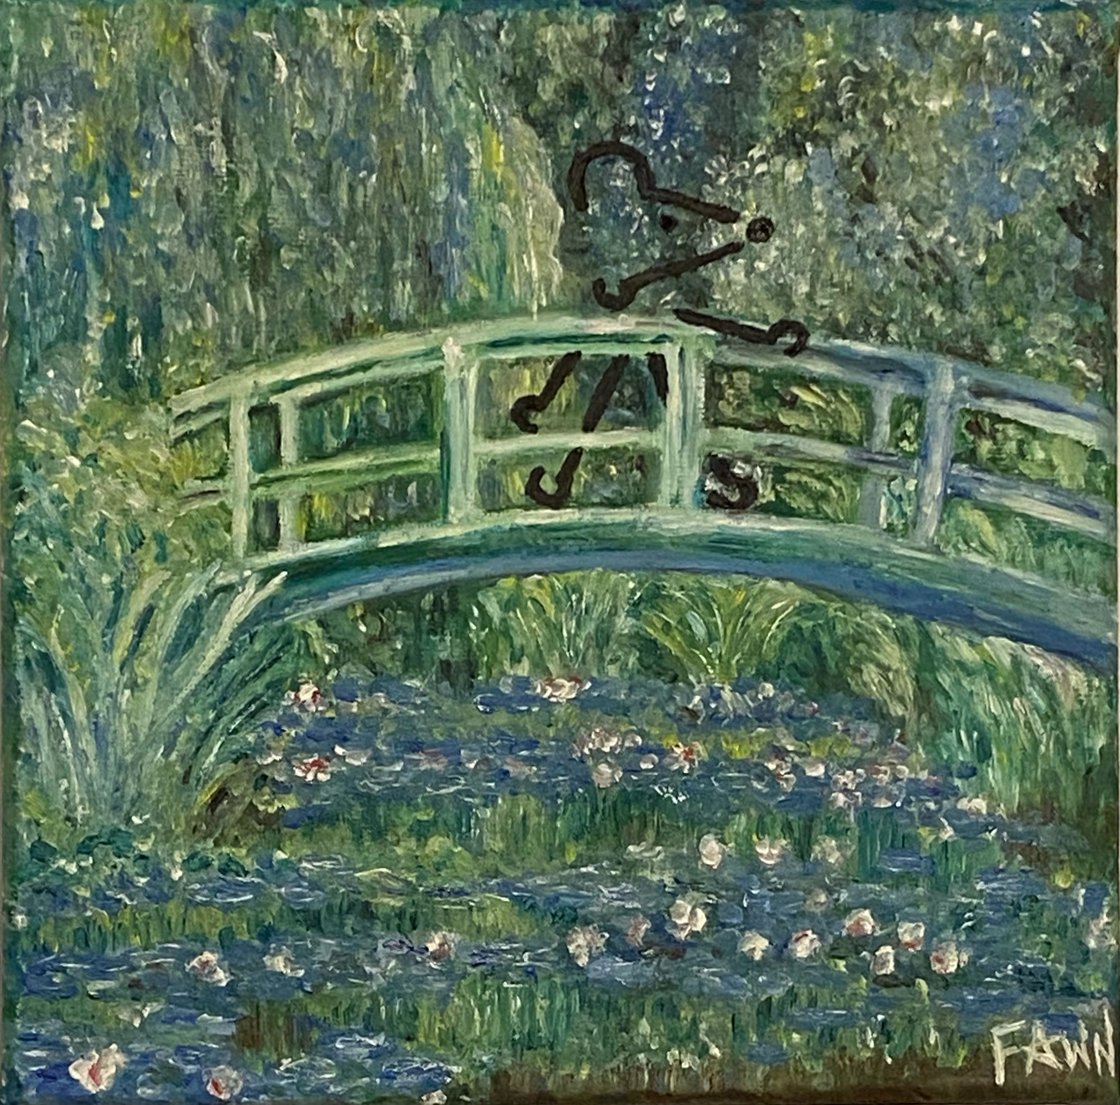 Image of QM Monet inspired artwork